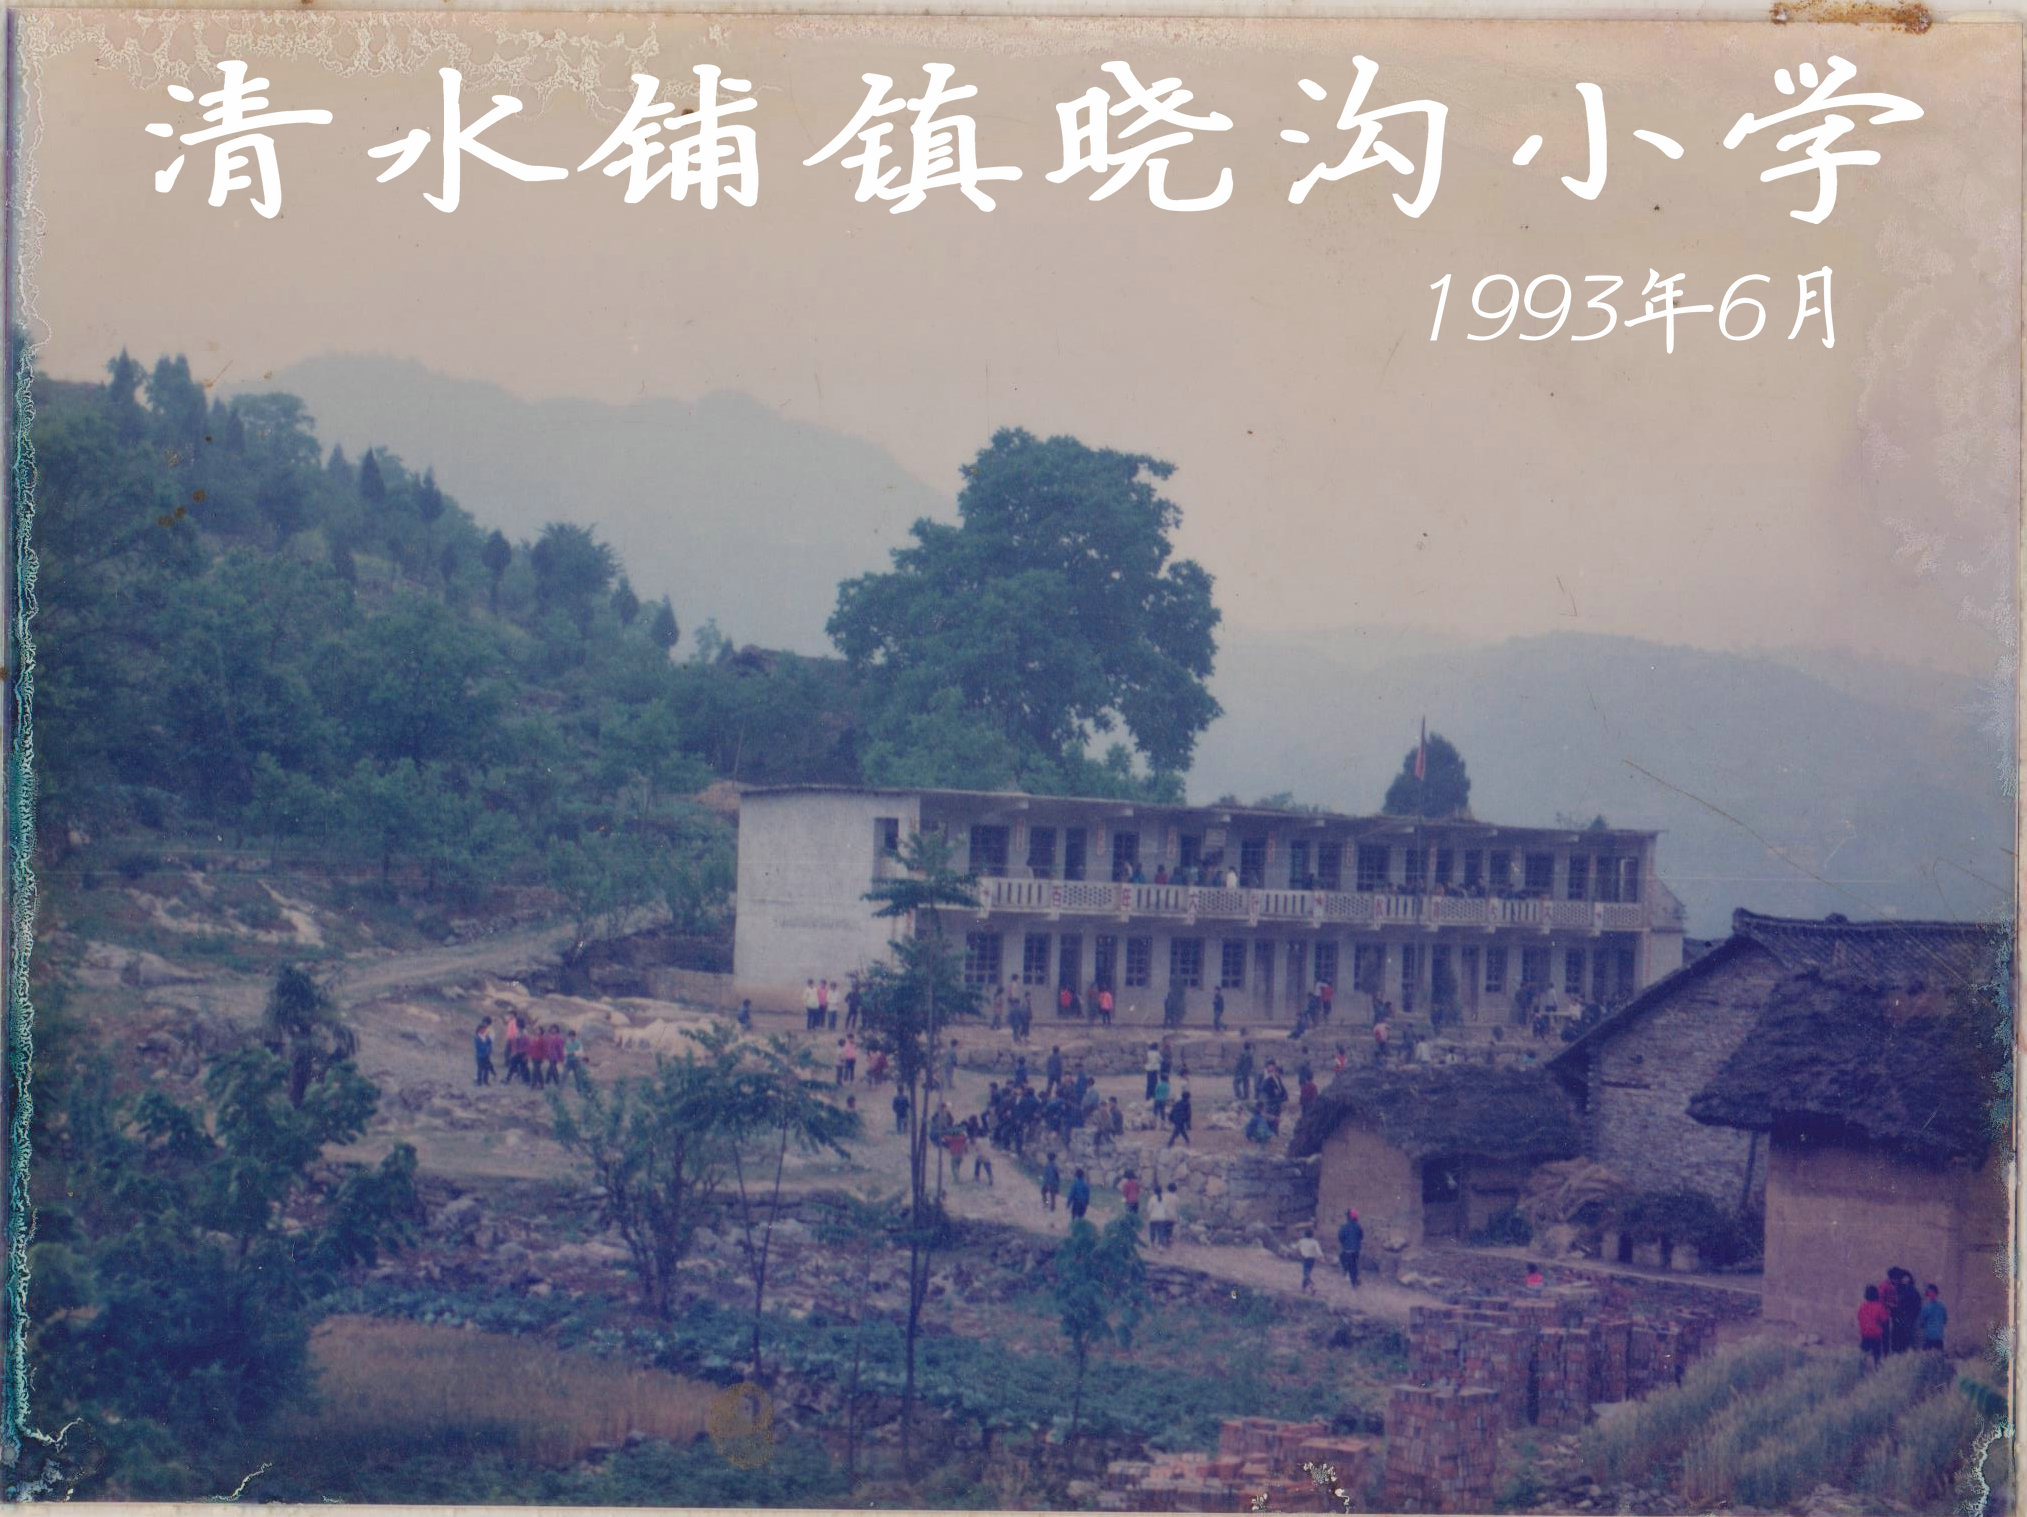 1993年曉溝國小照片